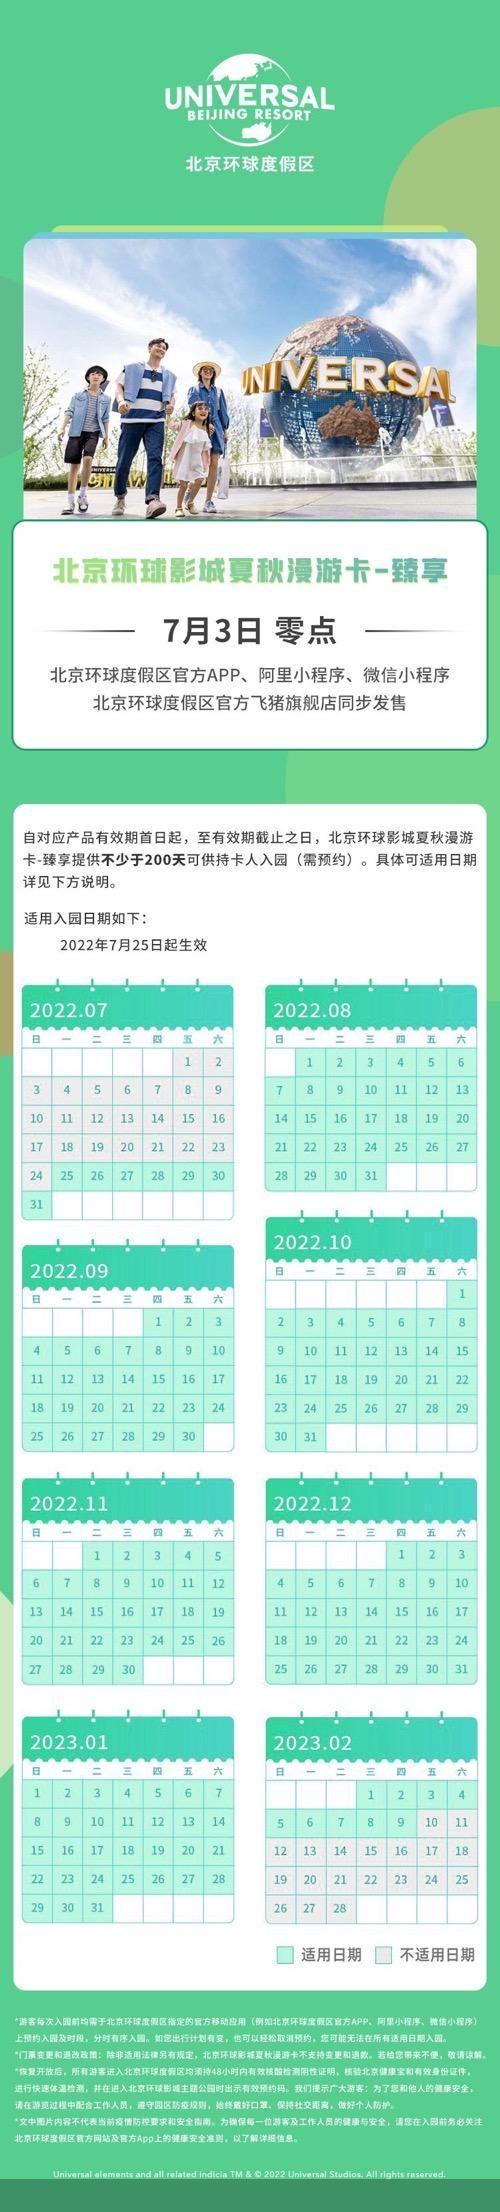 北京环球影城夏秋漫游卡7月3日起限量发售